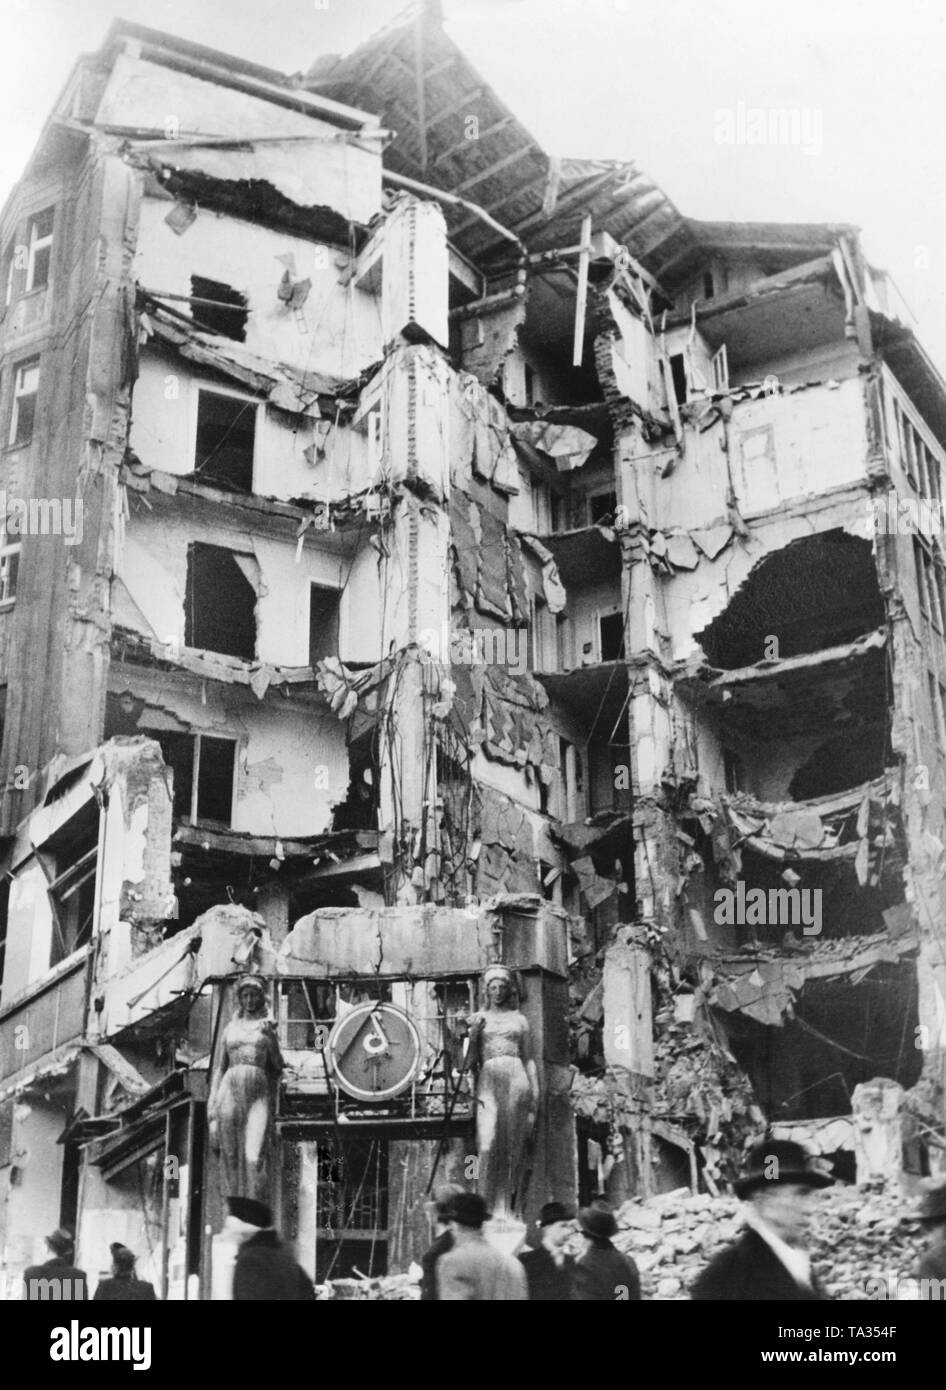 L'edificio a Praga in Piazza Venceslao è stata bombardata durante la Seconda Guerra Mondiale. Foto non datata intorno al 1945. Foto Stock